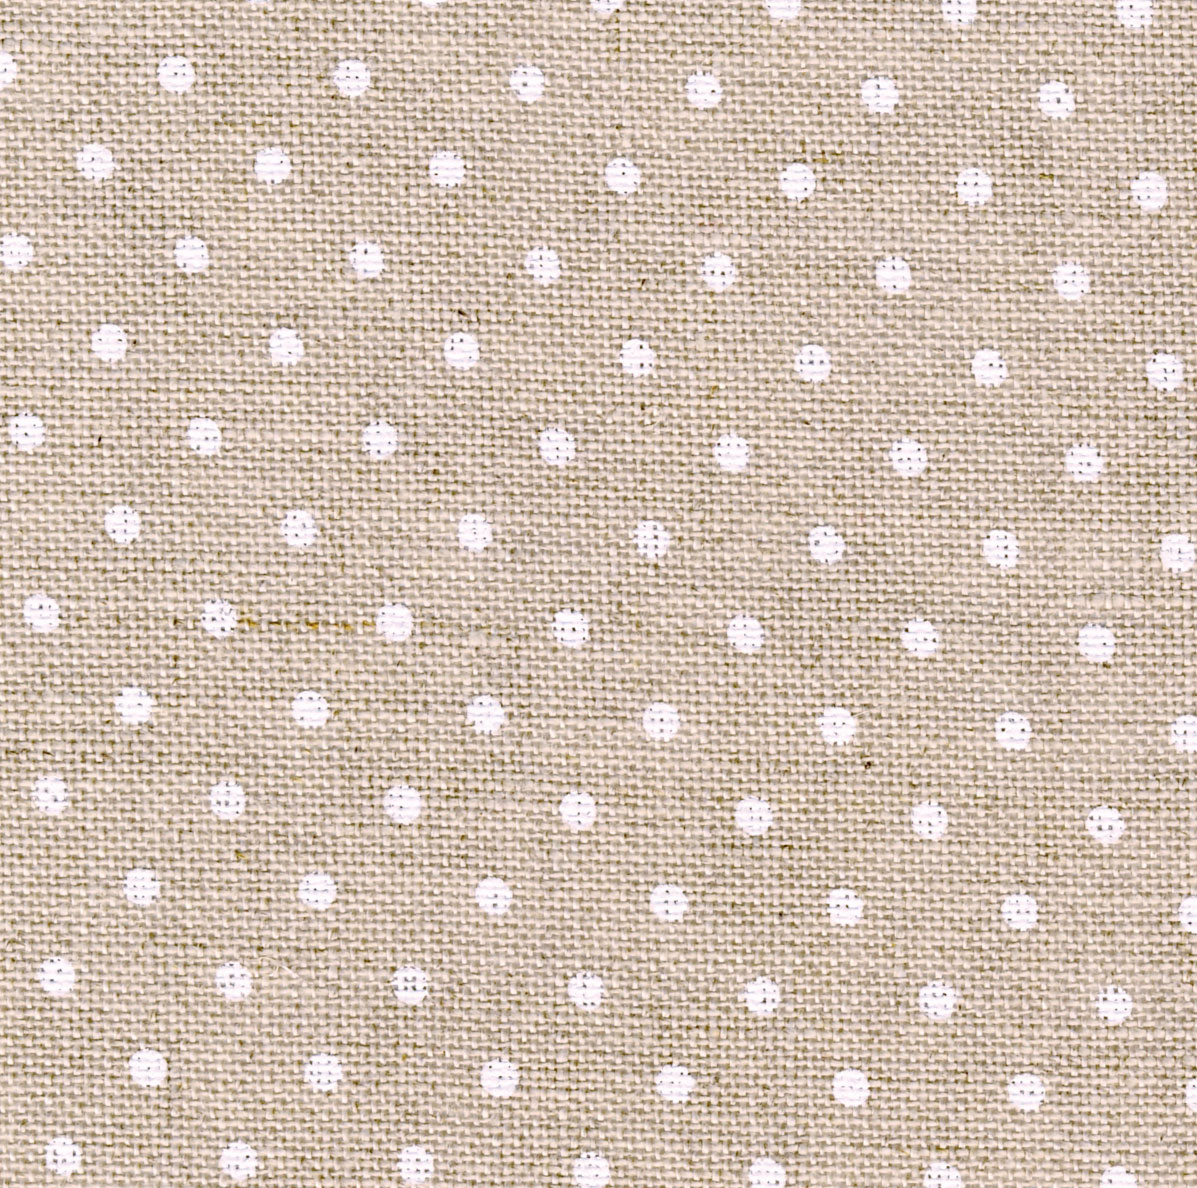 Raw /White Dot  : 5379 : 32 Belfast Linen : Per Meter 100cm x 140cm   